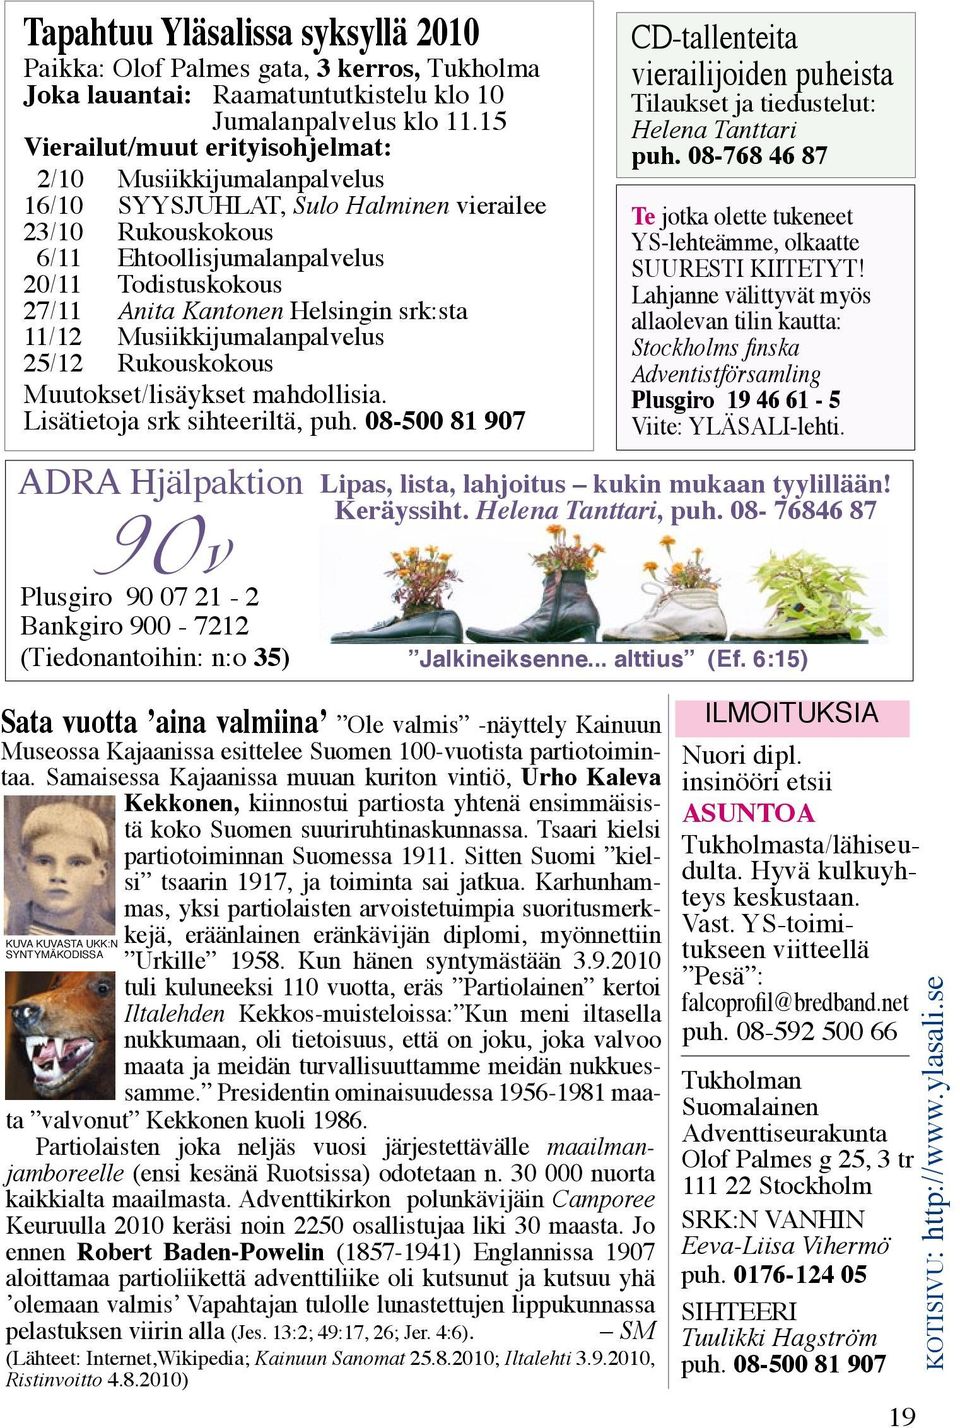 Helsingin srk:sta 11/12 Musiikkijumalanpalvelus 25/12 Rukouskokous Muutokset/lisäykset mahdollisia. Lisätietoja srk sihteeriltä, puh.